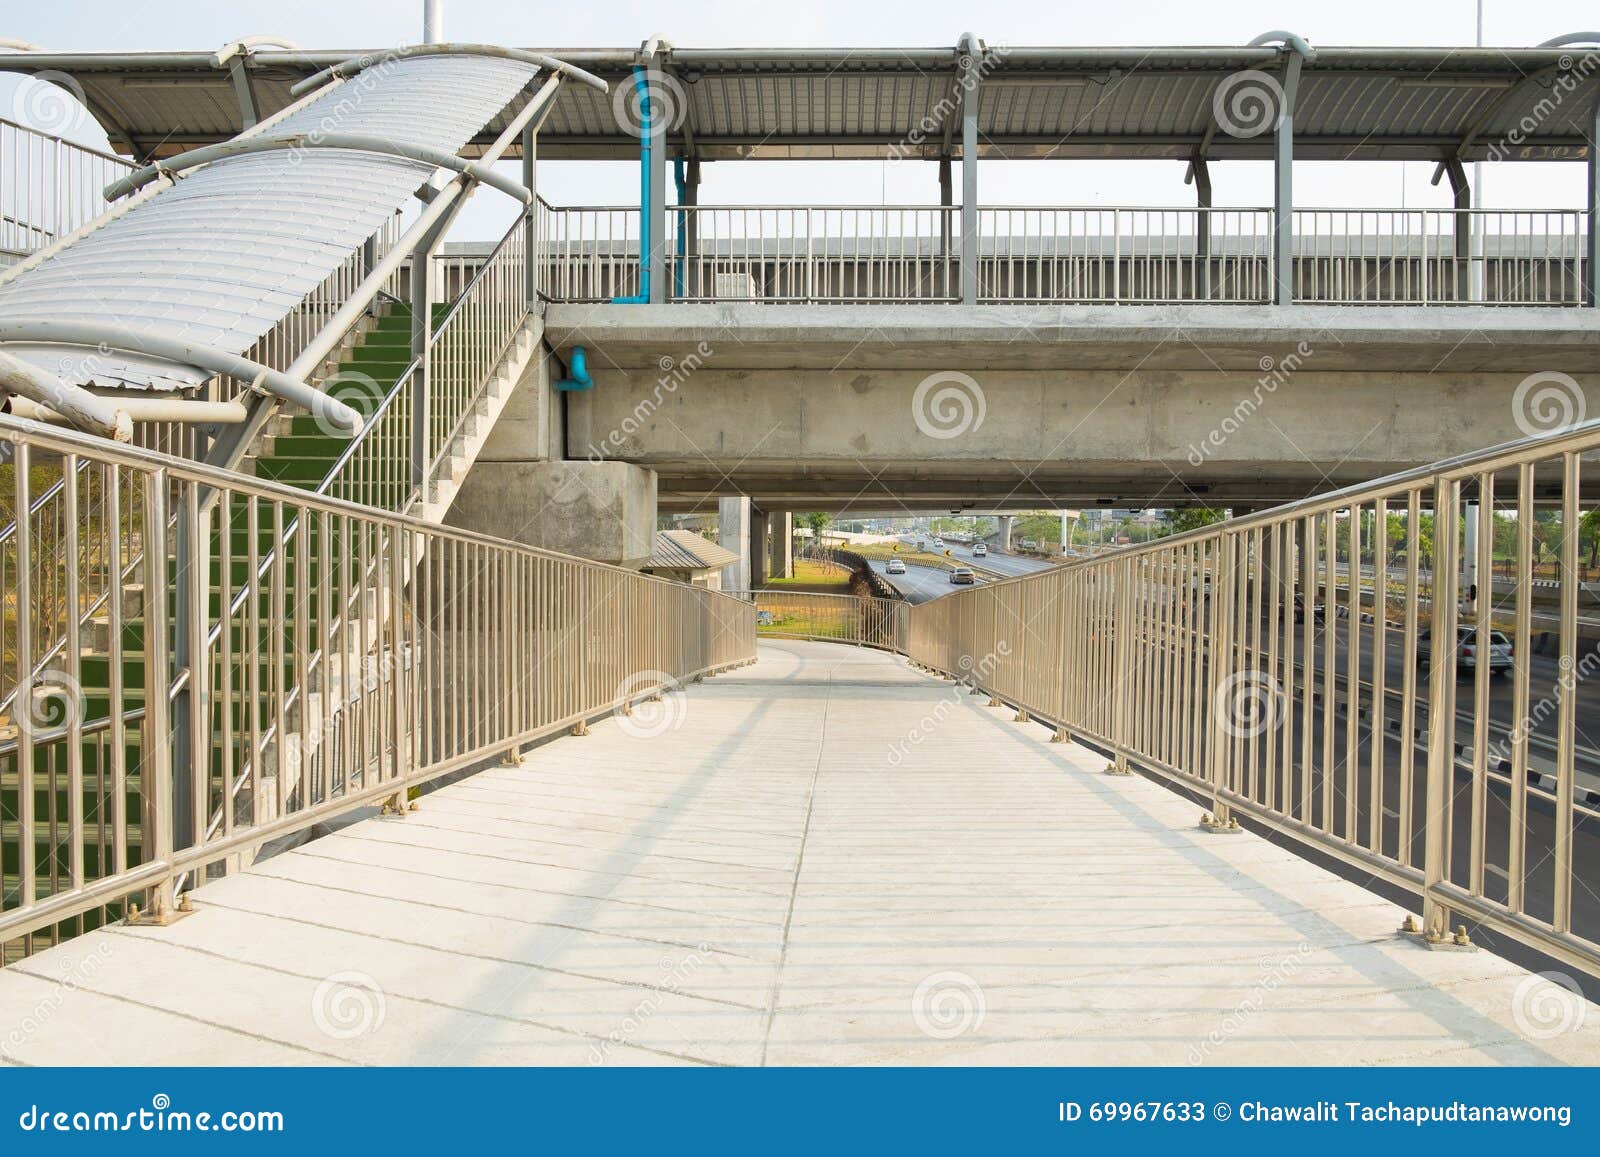 Walking overpass stock image. Image of walk, steel, overpass - 69967633